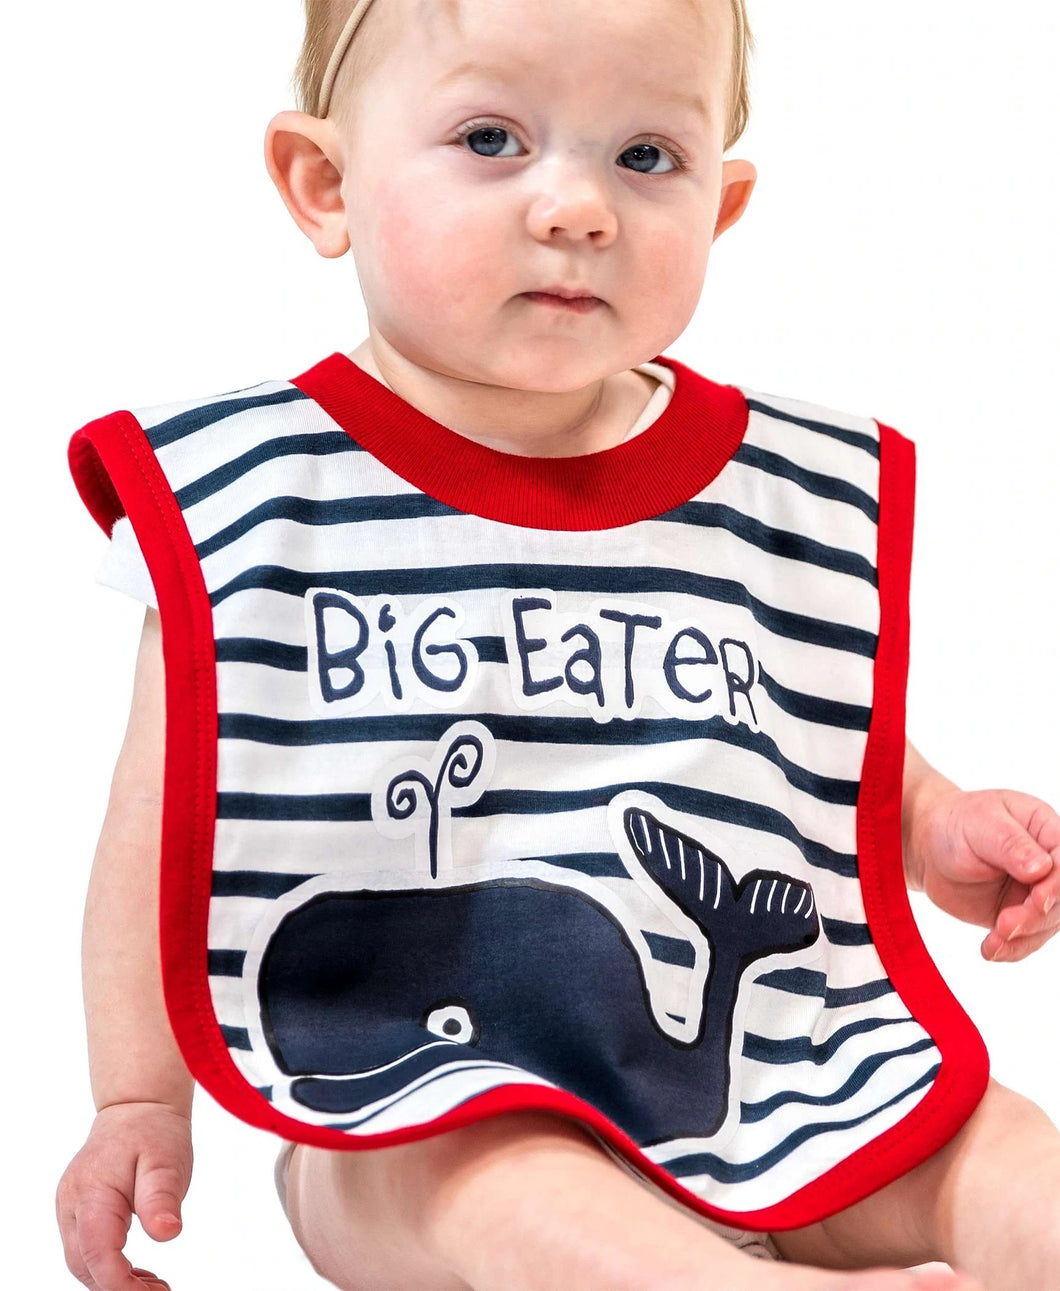 Big Eater Infant Bib